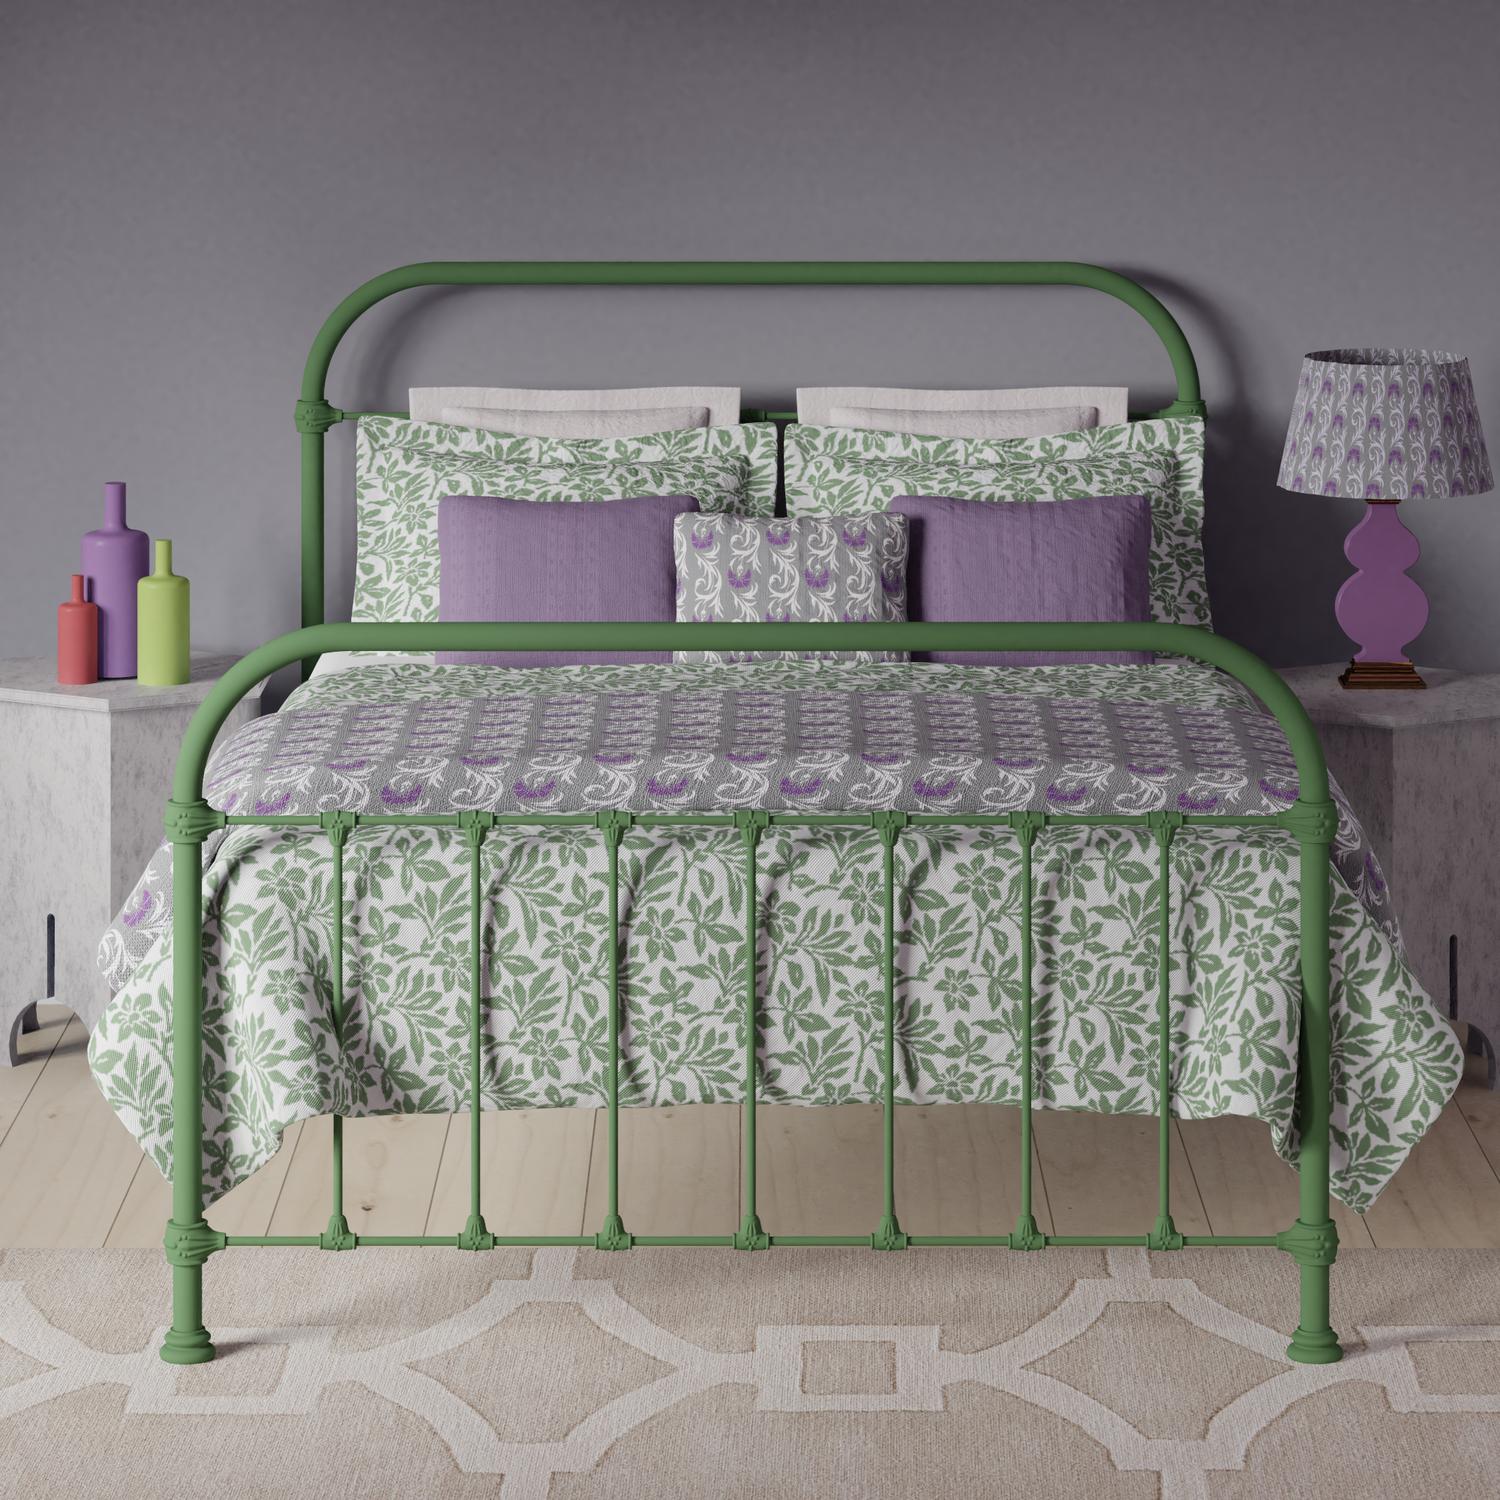 Timolin iron bed - Image green purple